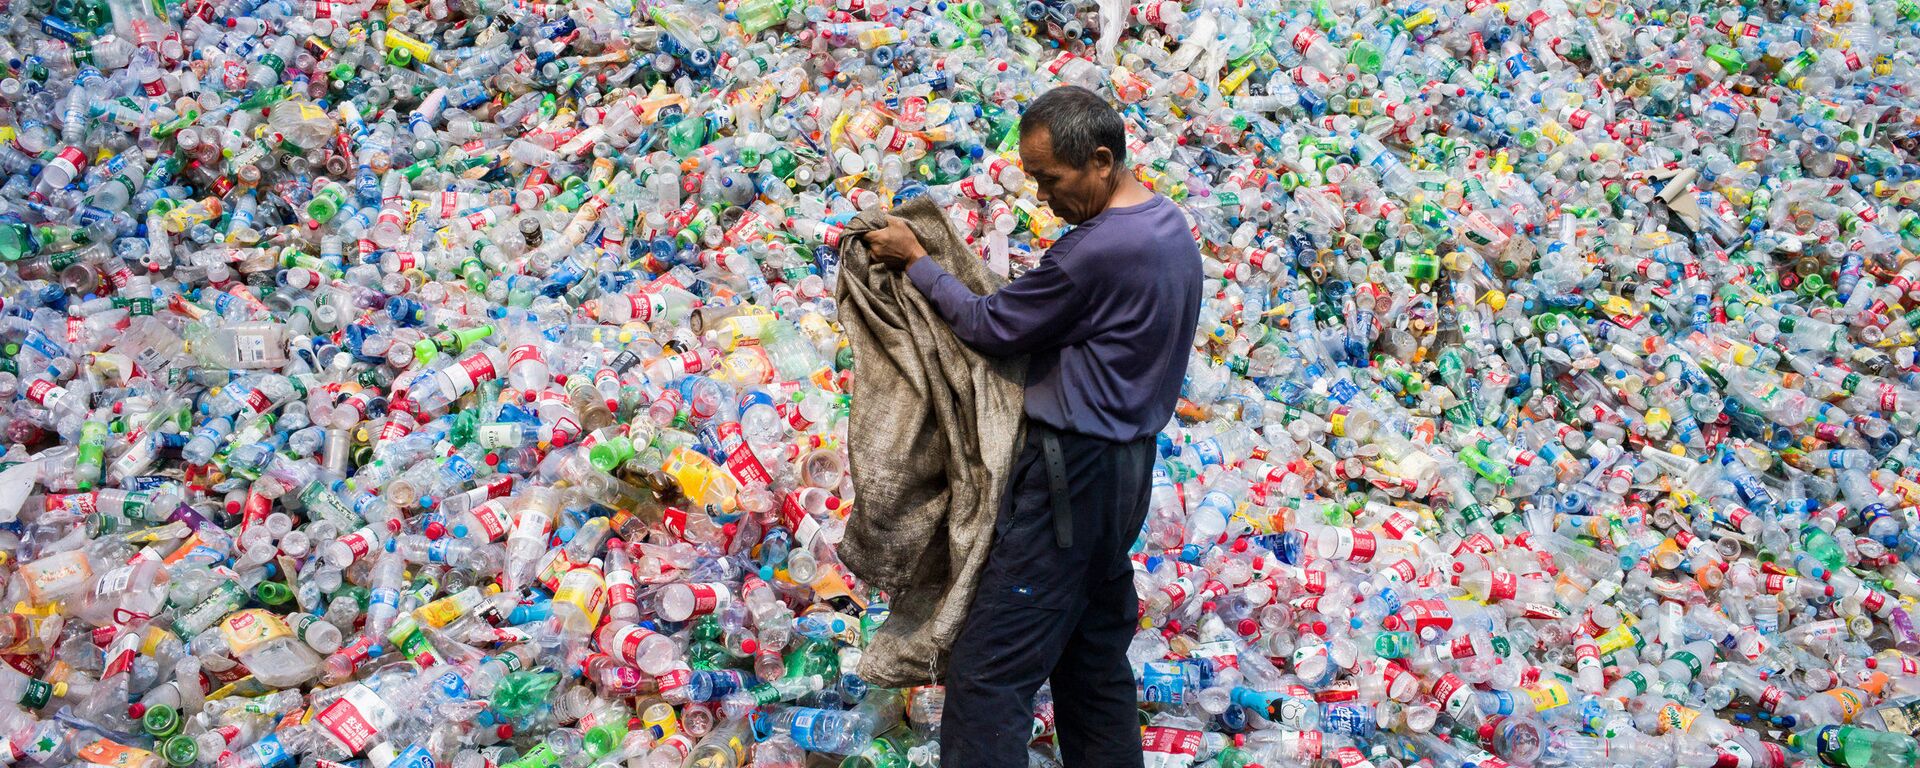 Công nhân Trung Quốc phân loại chai nhựa để tái chế ở ngoại ô Bắc Kinh - Sputnik Việt Nam, 1920, 22.10.2021